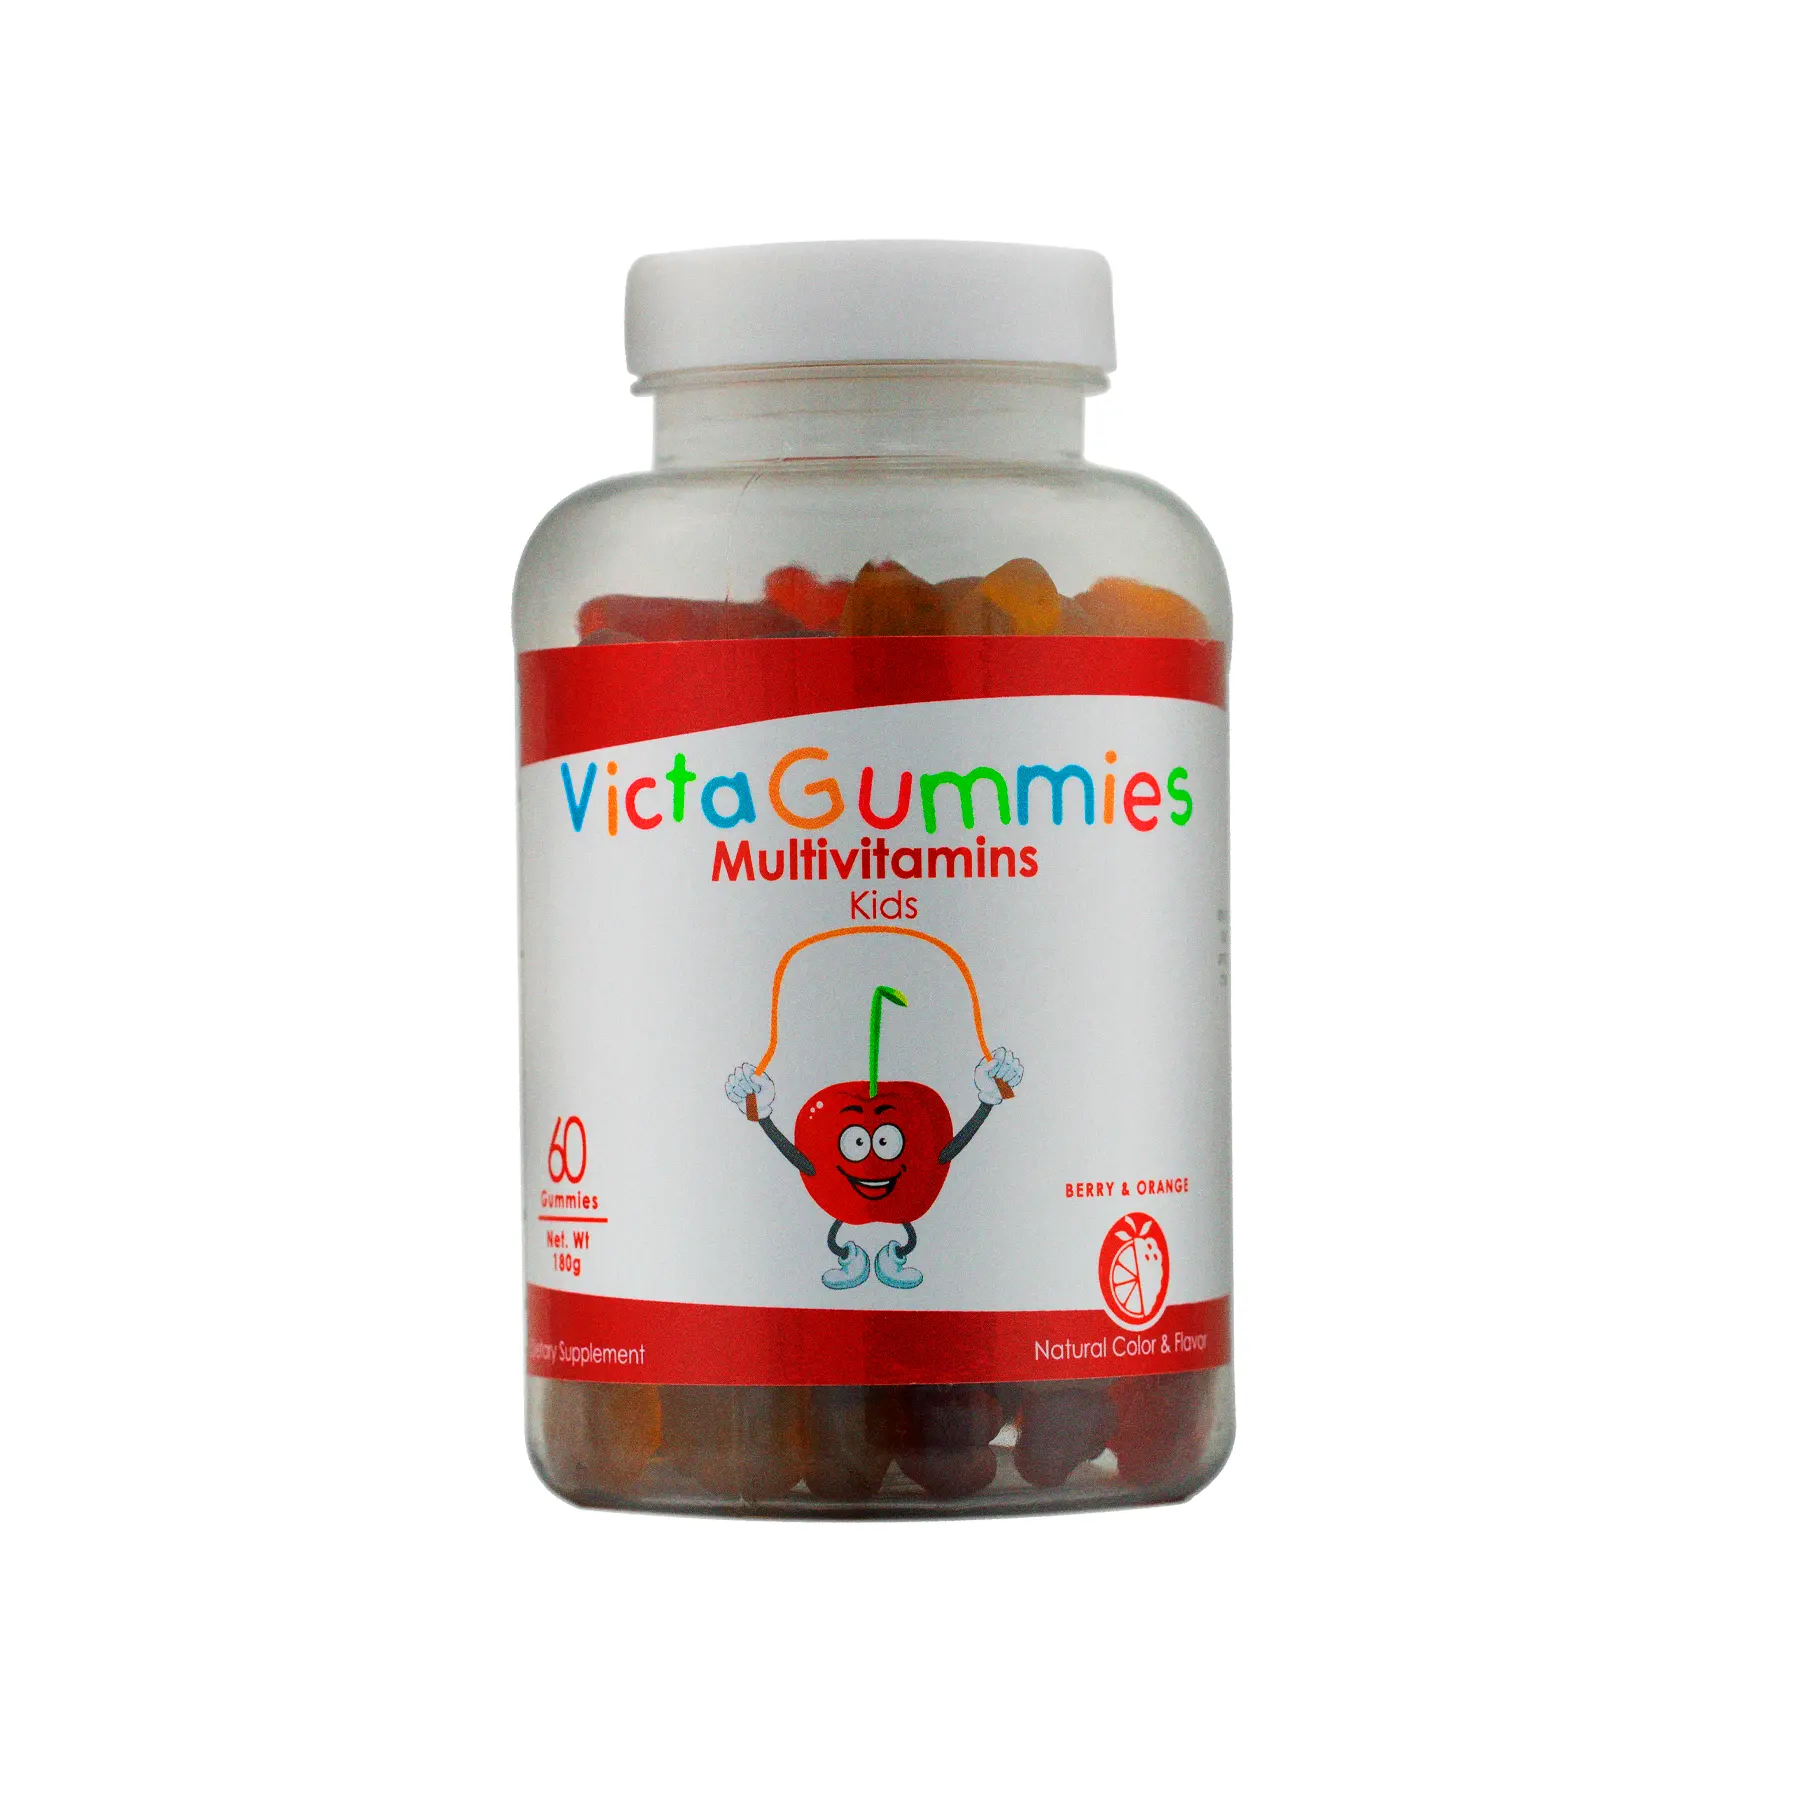 Витамины victagummeвитамины, 60 жевательных резинок в бутылке-пищевая добавка для детей с смесь витаминов a, C, D, E и витамином B